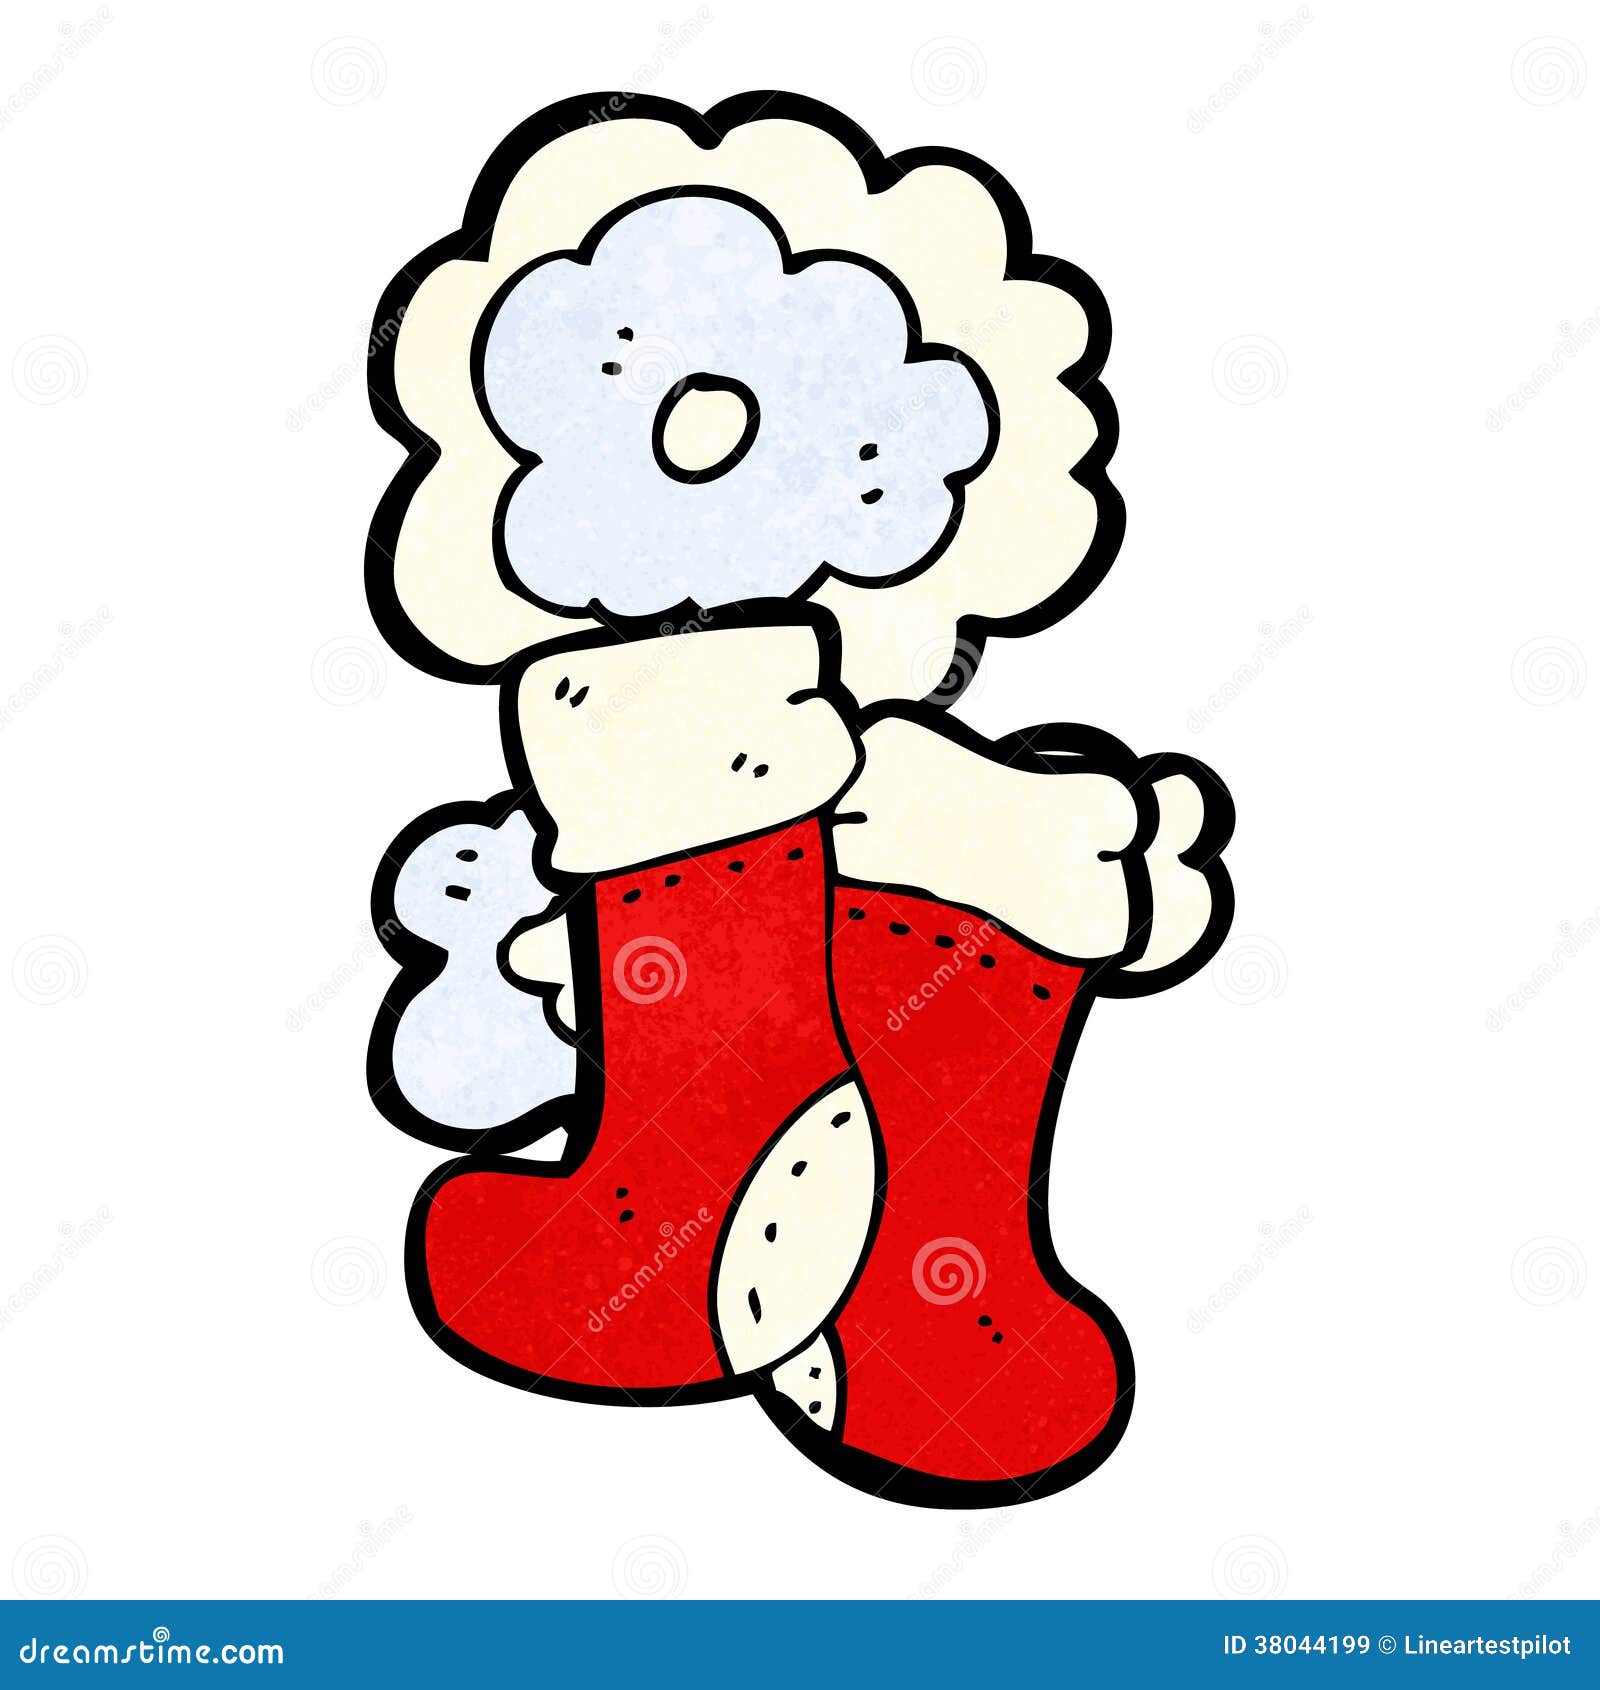 Cartoon socks stock vector. Illustration of socks, xmas - 38044199